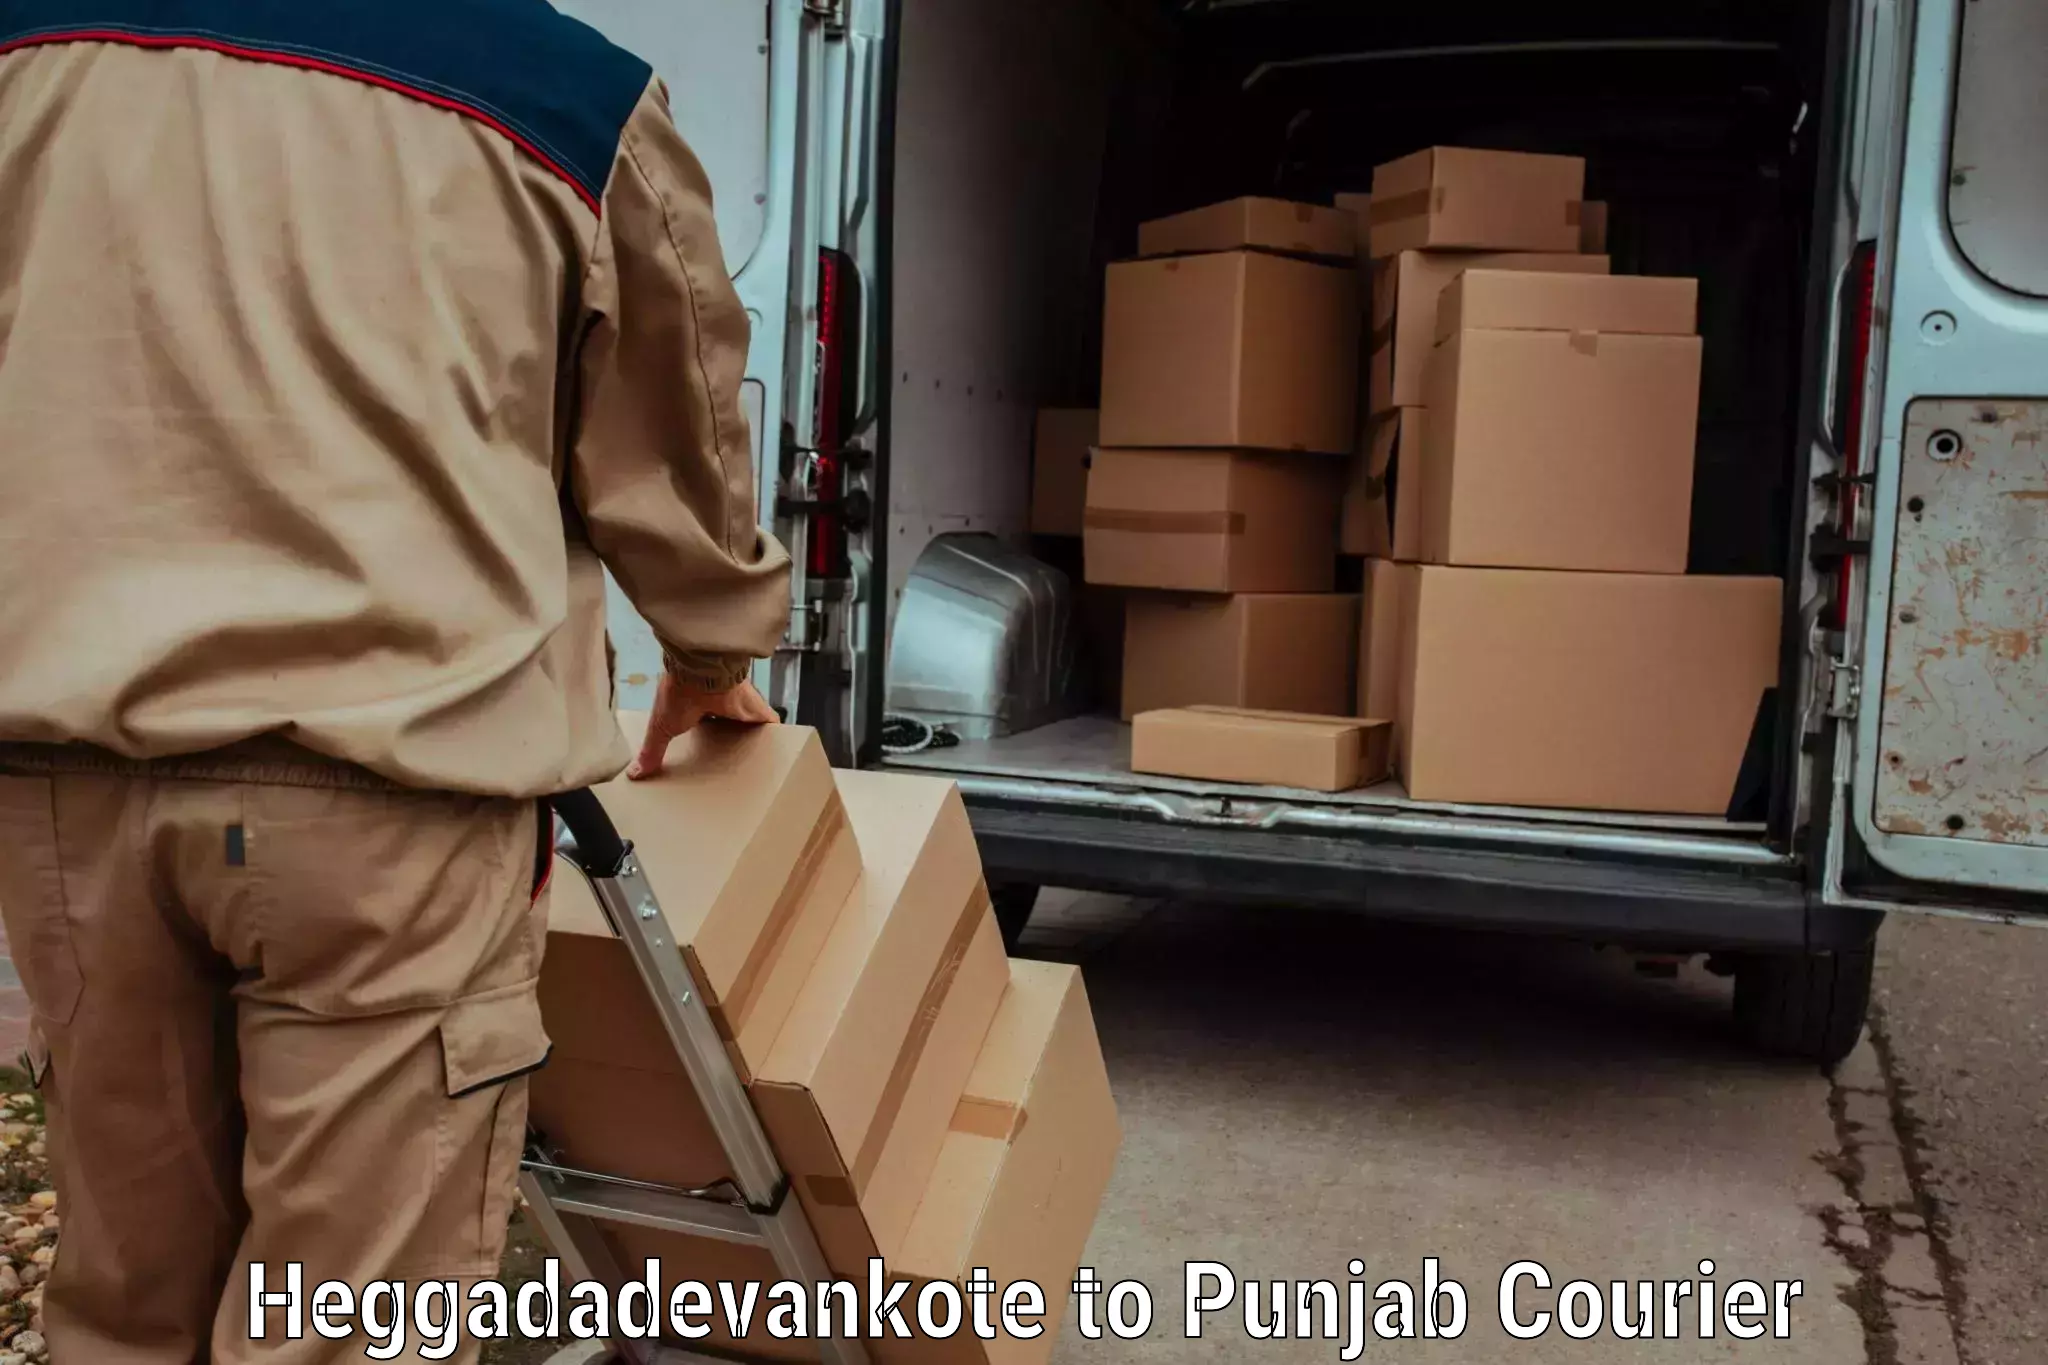 Luggage shipment processing in Heggadadevankote to Punjab